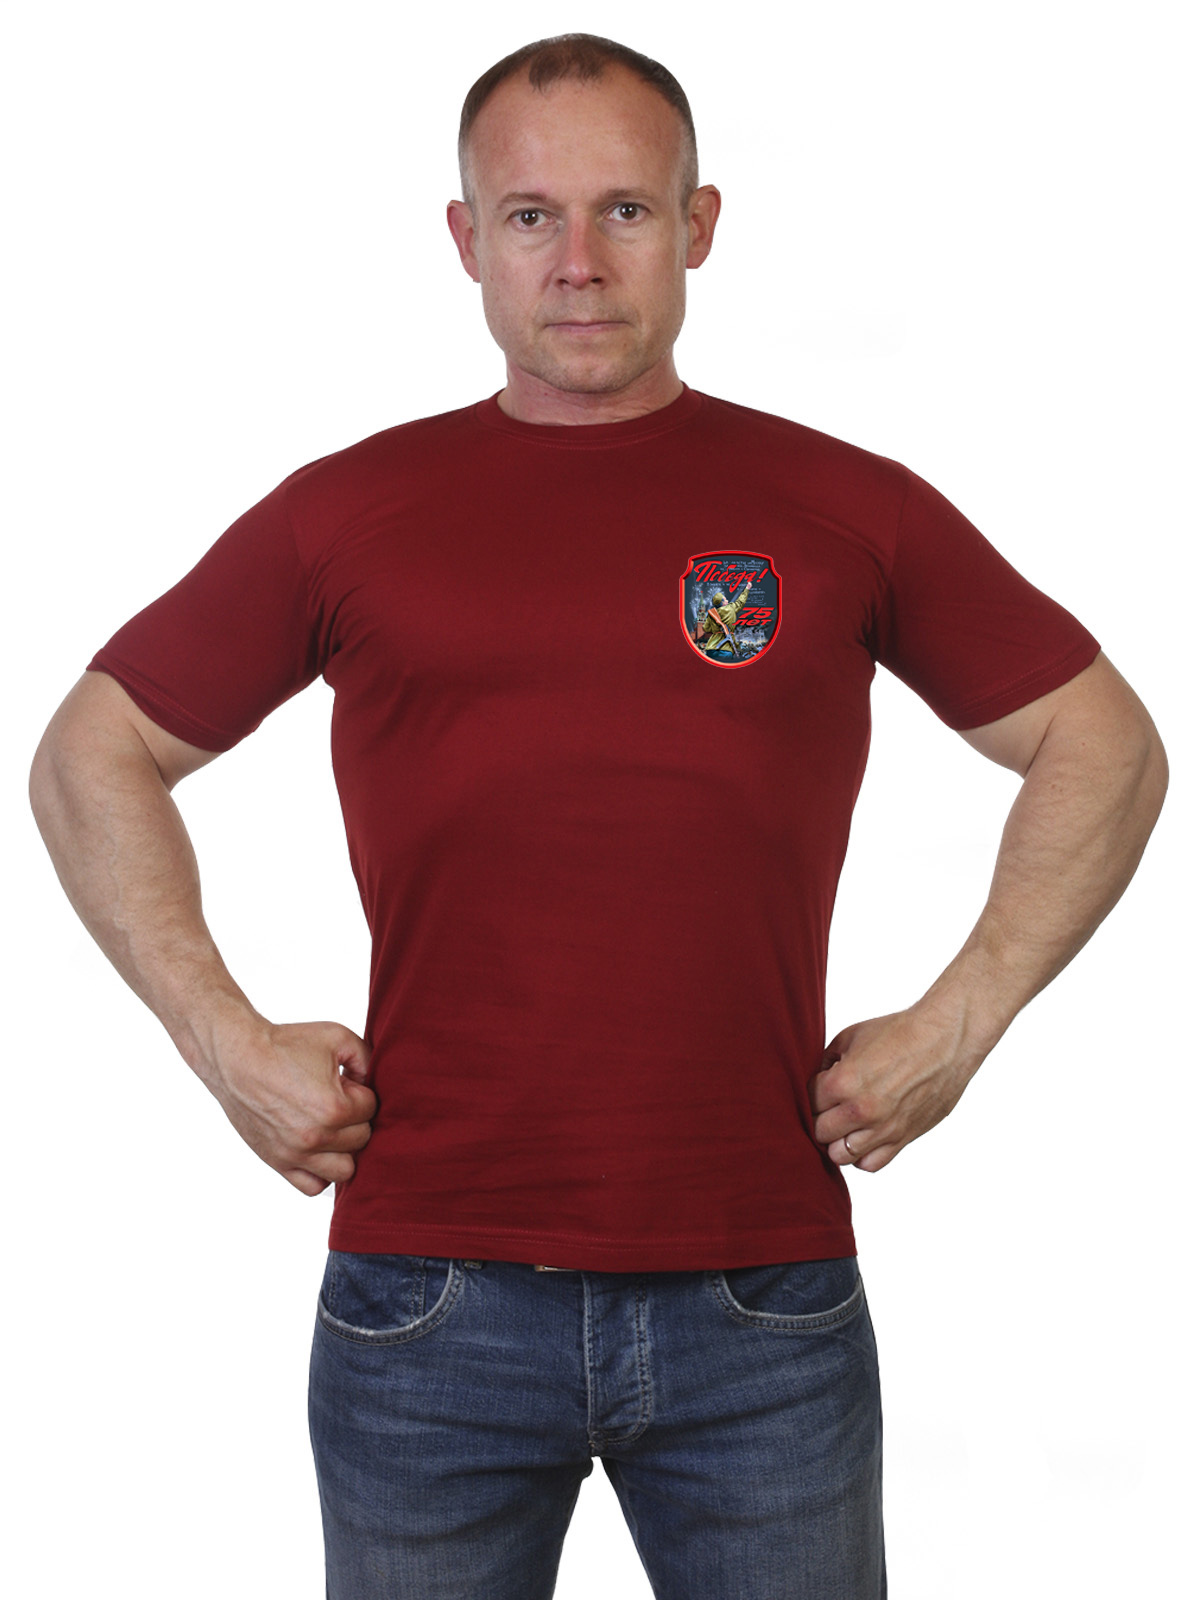 Краповая футболка с логотипом День Победы 